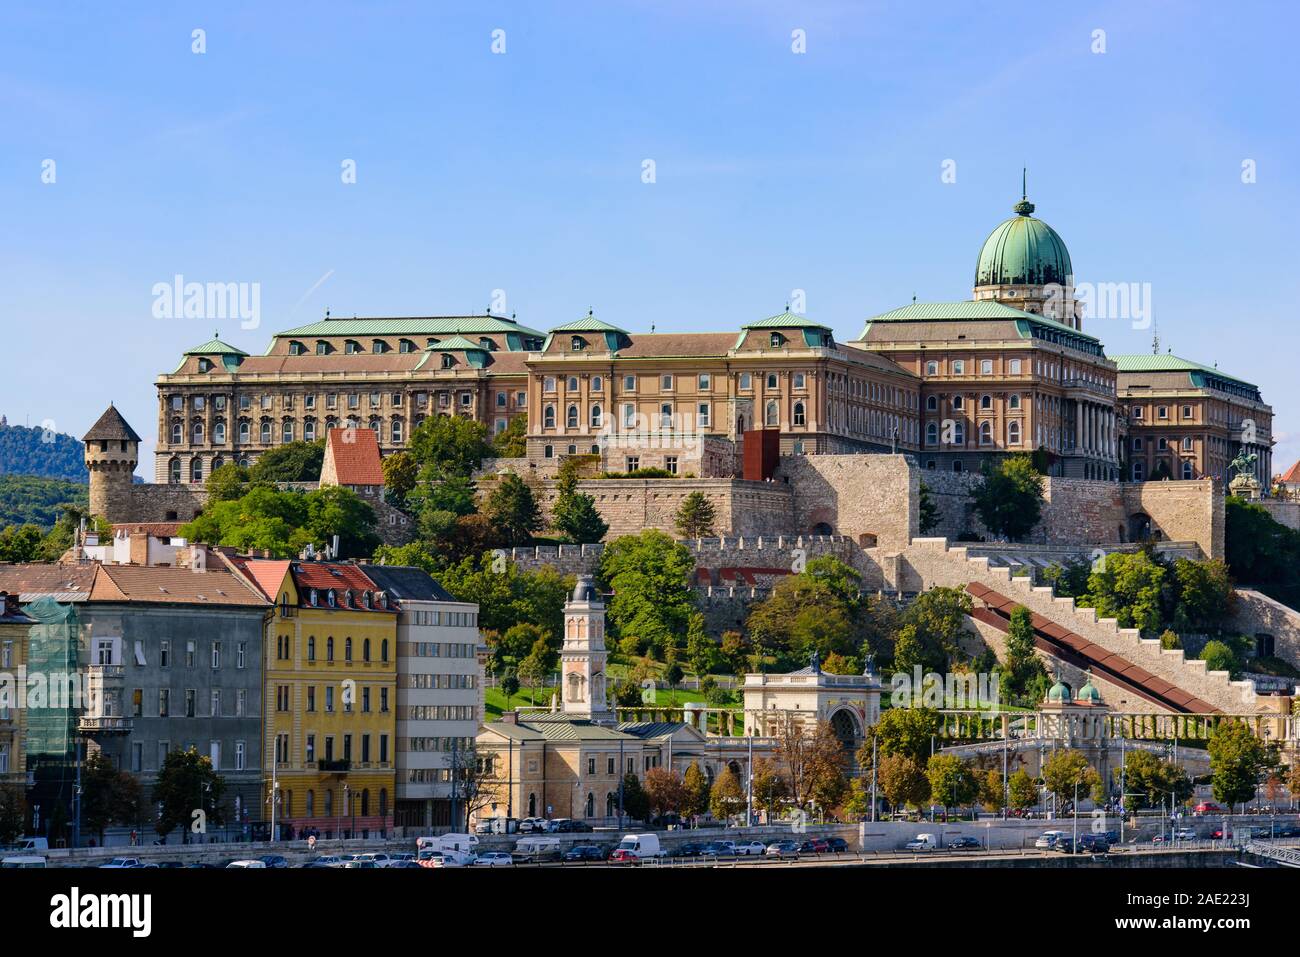 Il Castello di Buda, il castello storico e complesso del palazzo del re ungherese di Budapest, in Ungheria Foto Stock